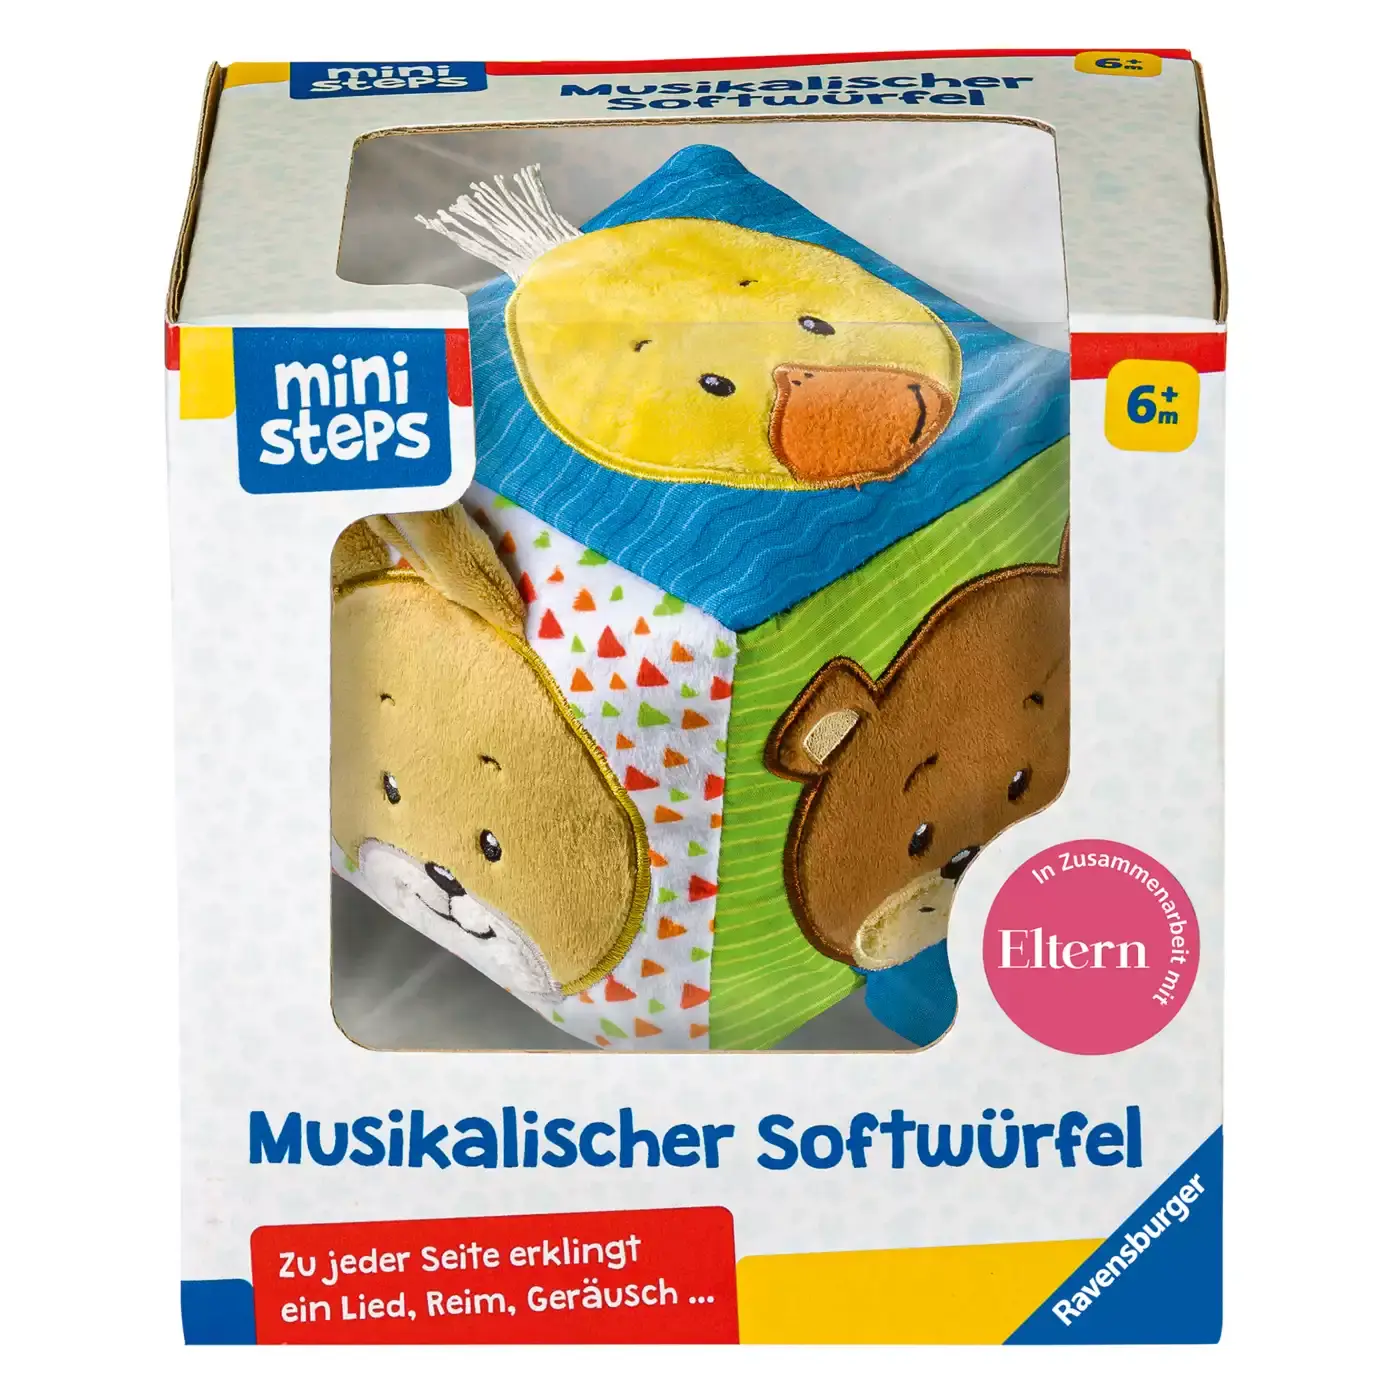 Mini Steps Musikalischer Softwürfel Ravensburger Mehrfarbig 2000579697203 3